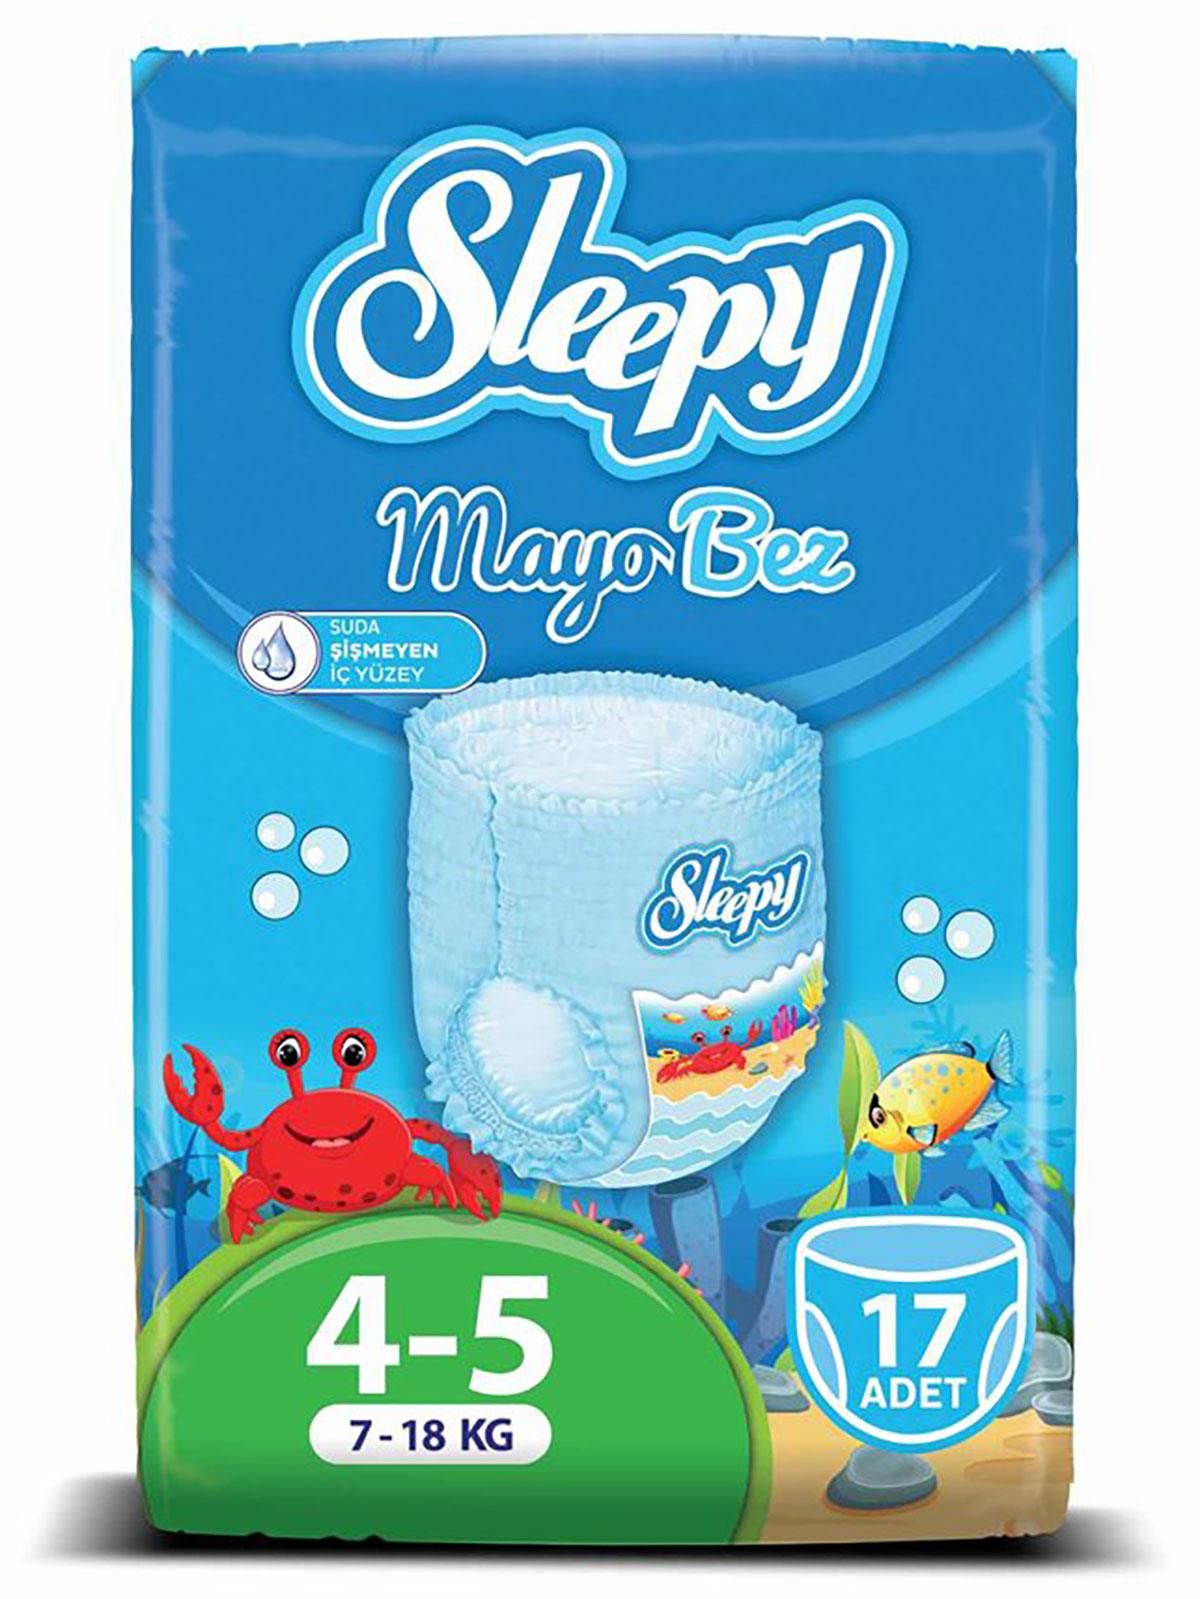 Sleepy Mayo Külot Bez Junior 4-5 Beden Junior 17 Adet